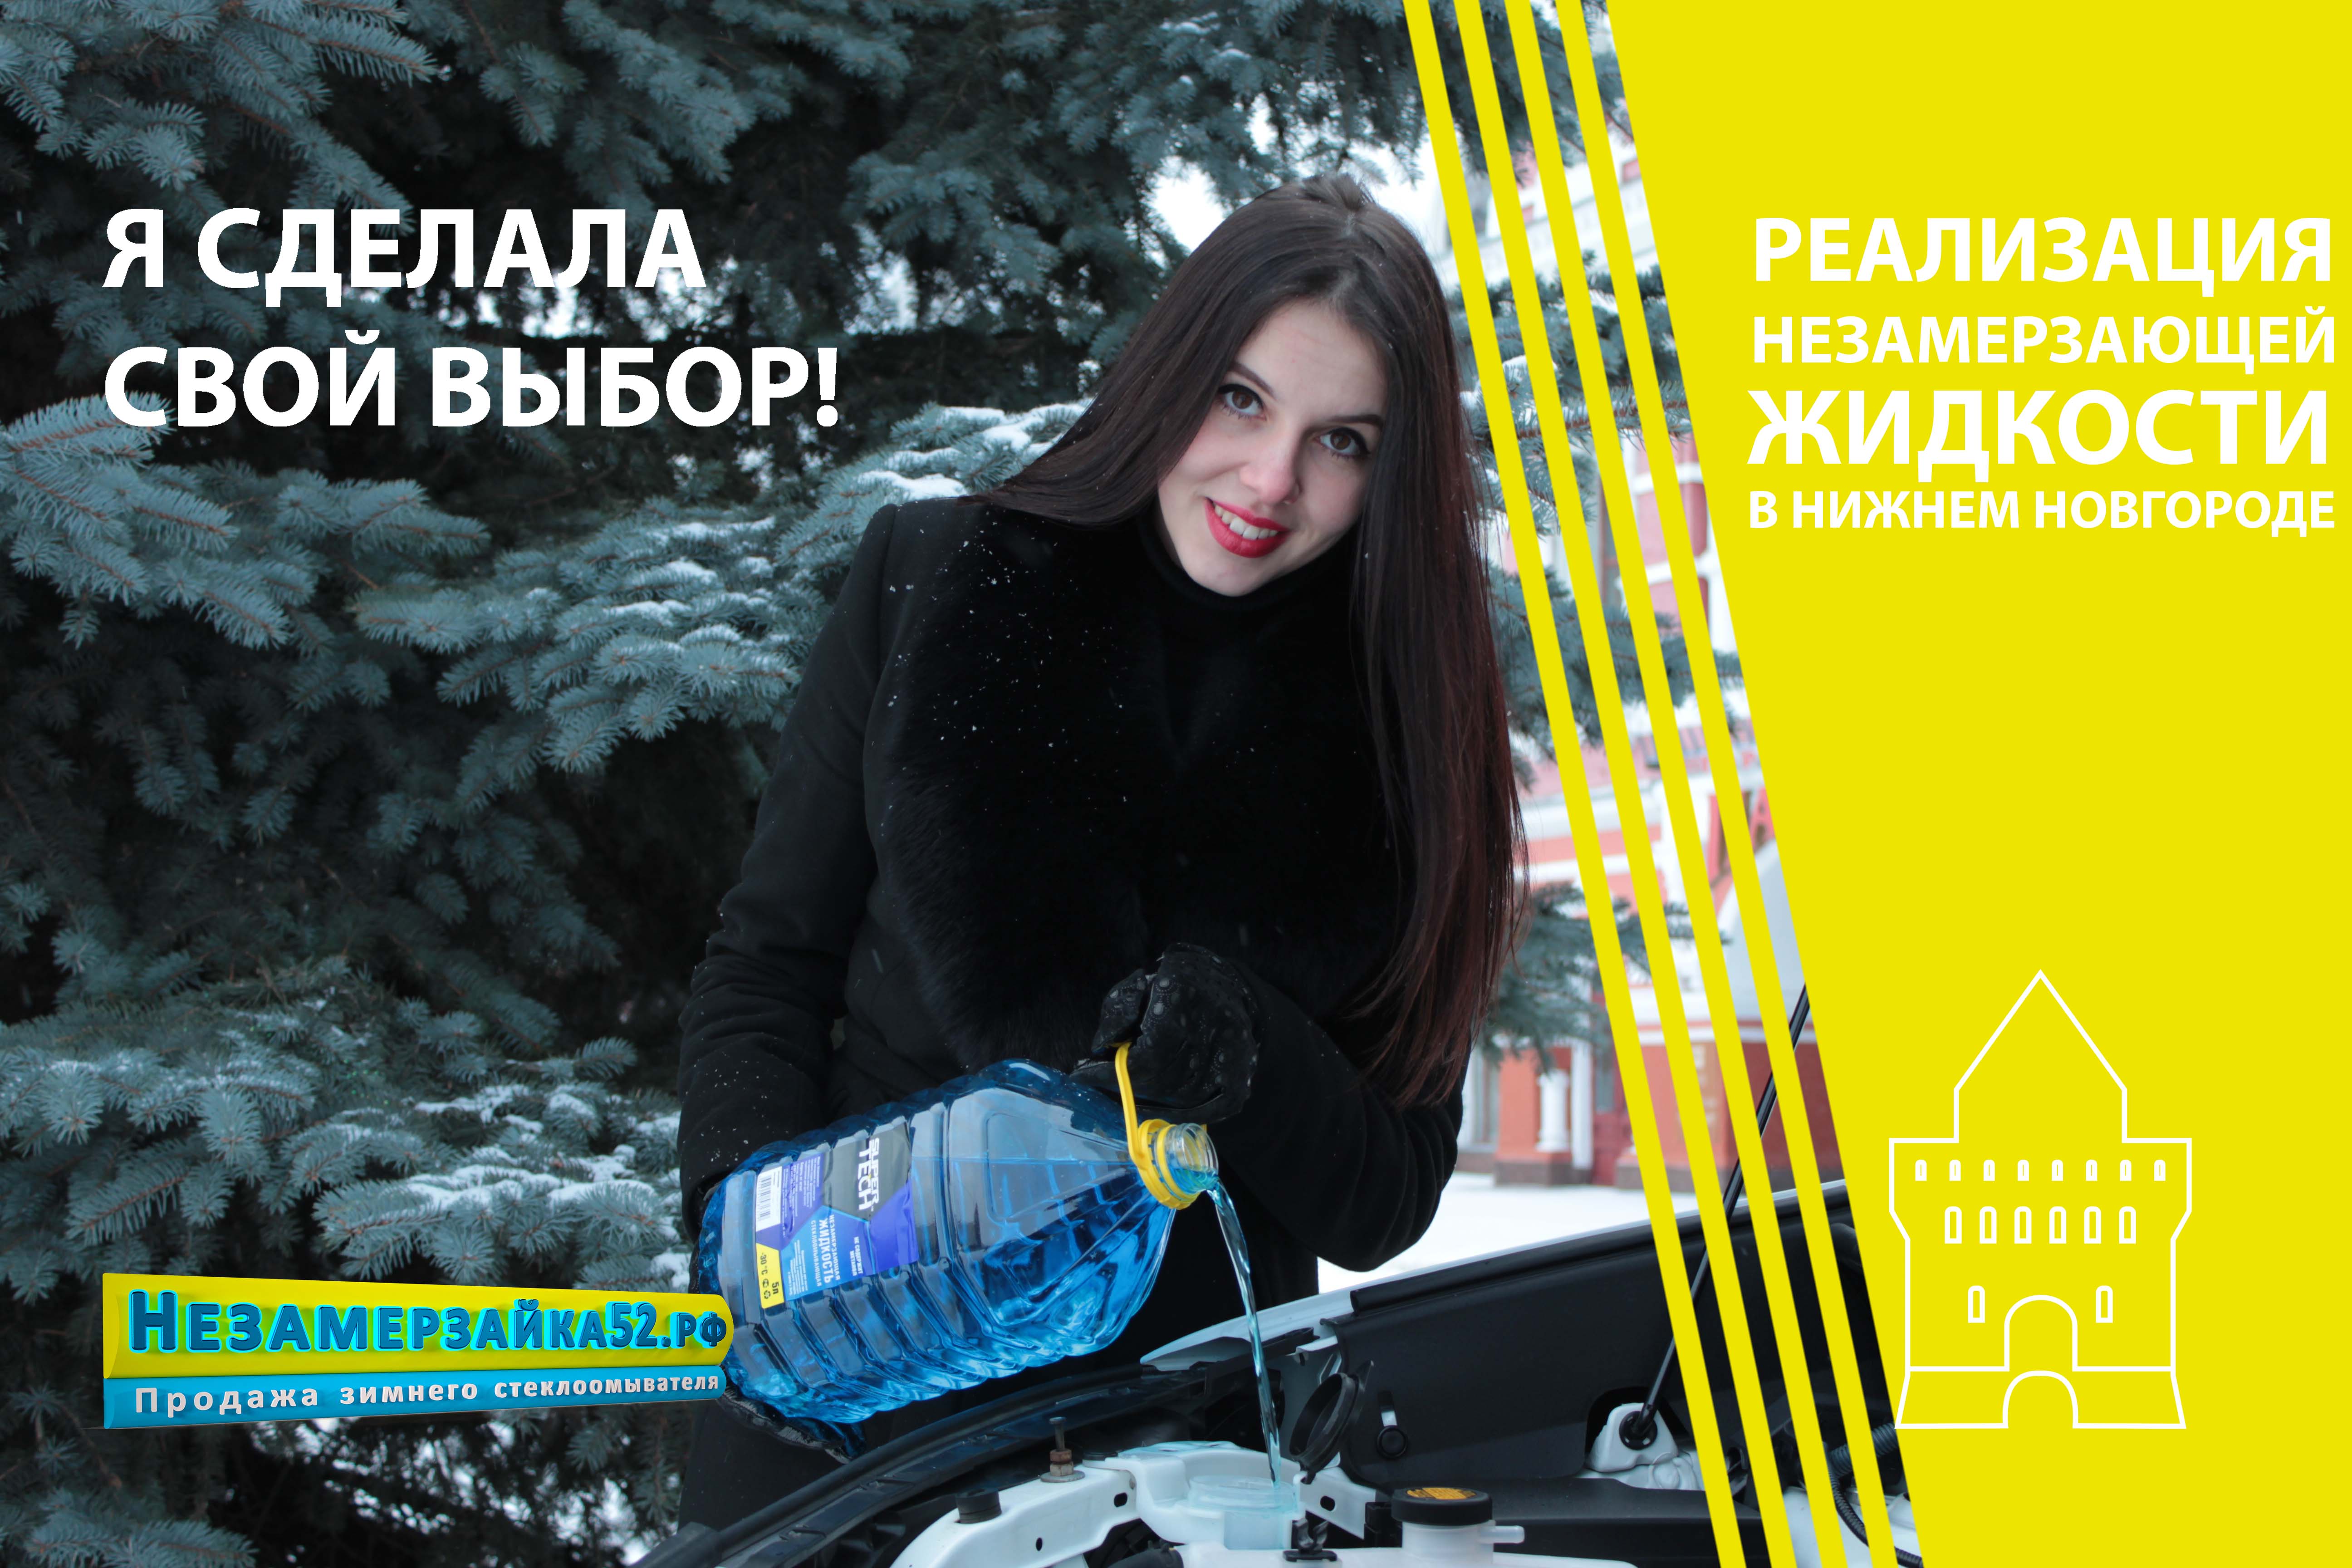 Жидкость стеклоомывателя в Нижнем Новгороде реклама